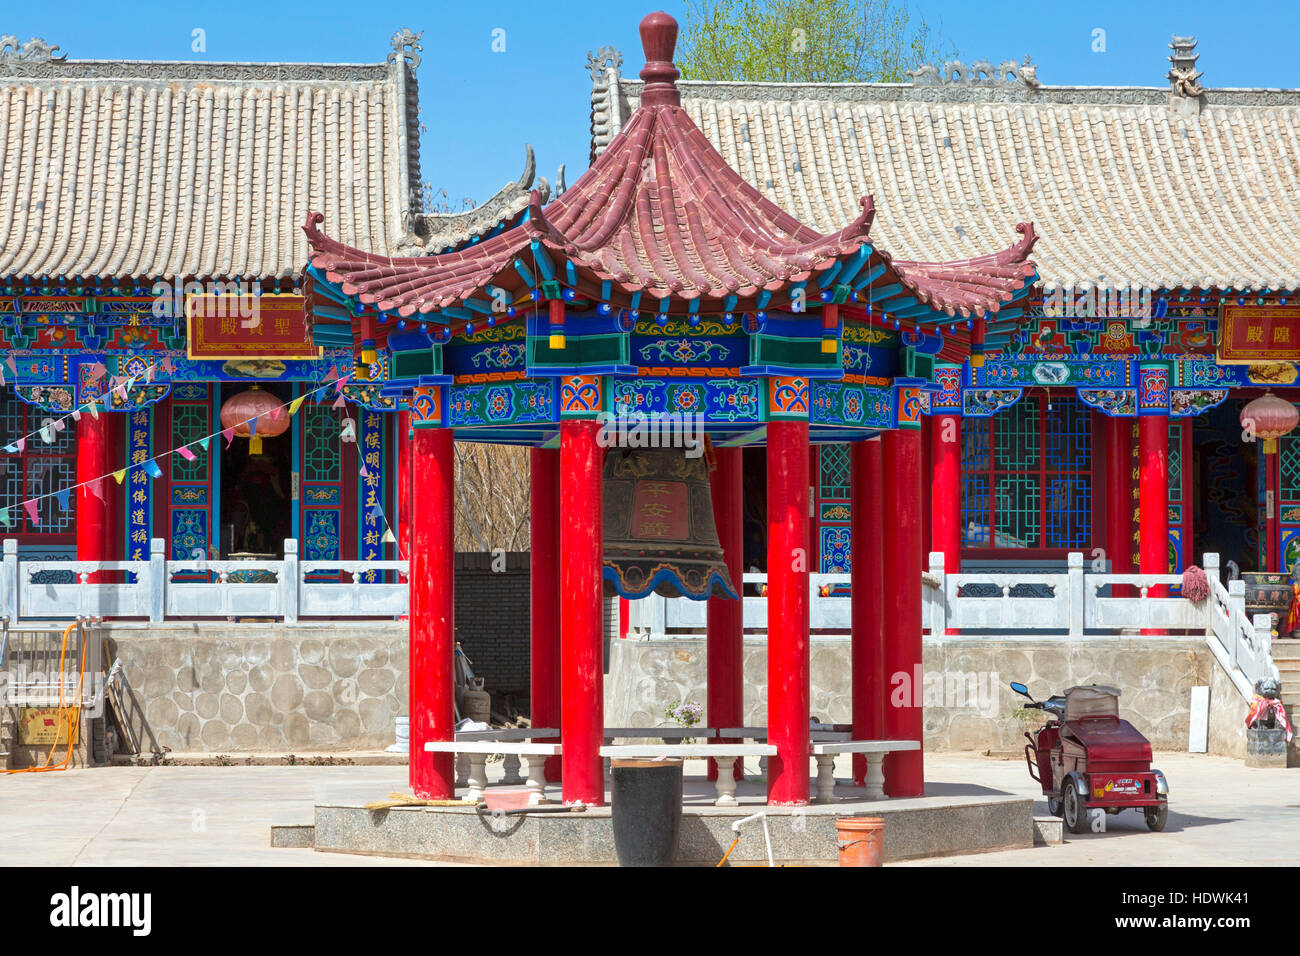 Chinese pagoda at Wuzhong, Ningxia province, China Stock Photo